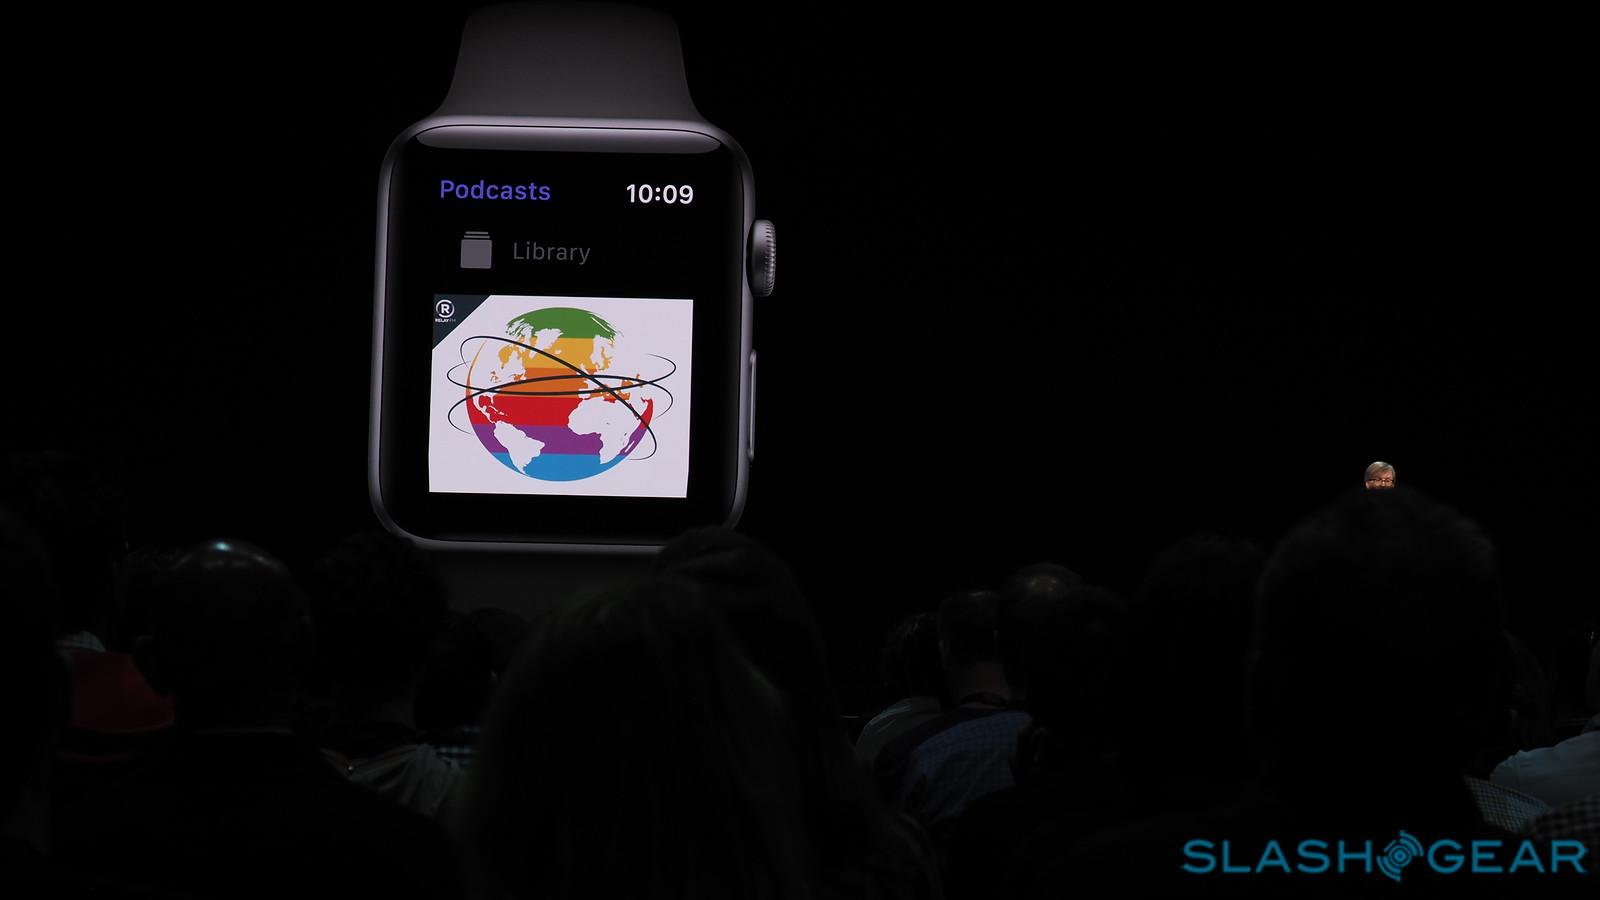 Apple Watch Podcasts App Added In Watchos 5 Slashgear